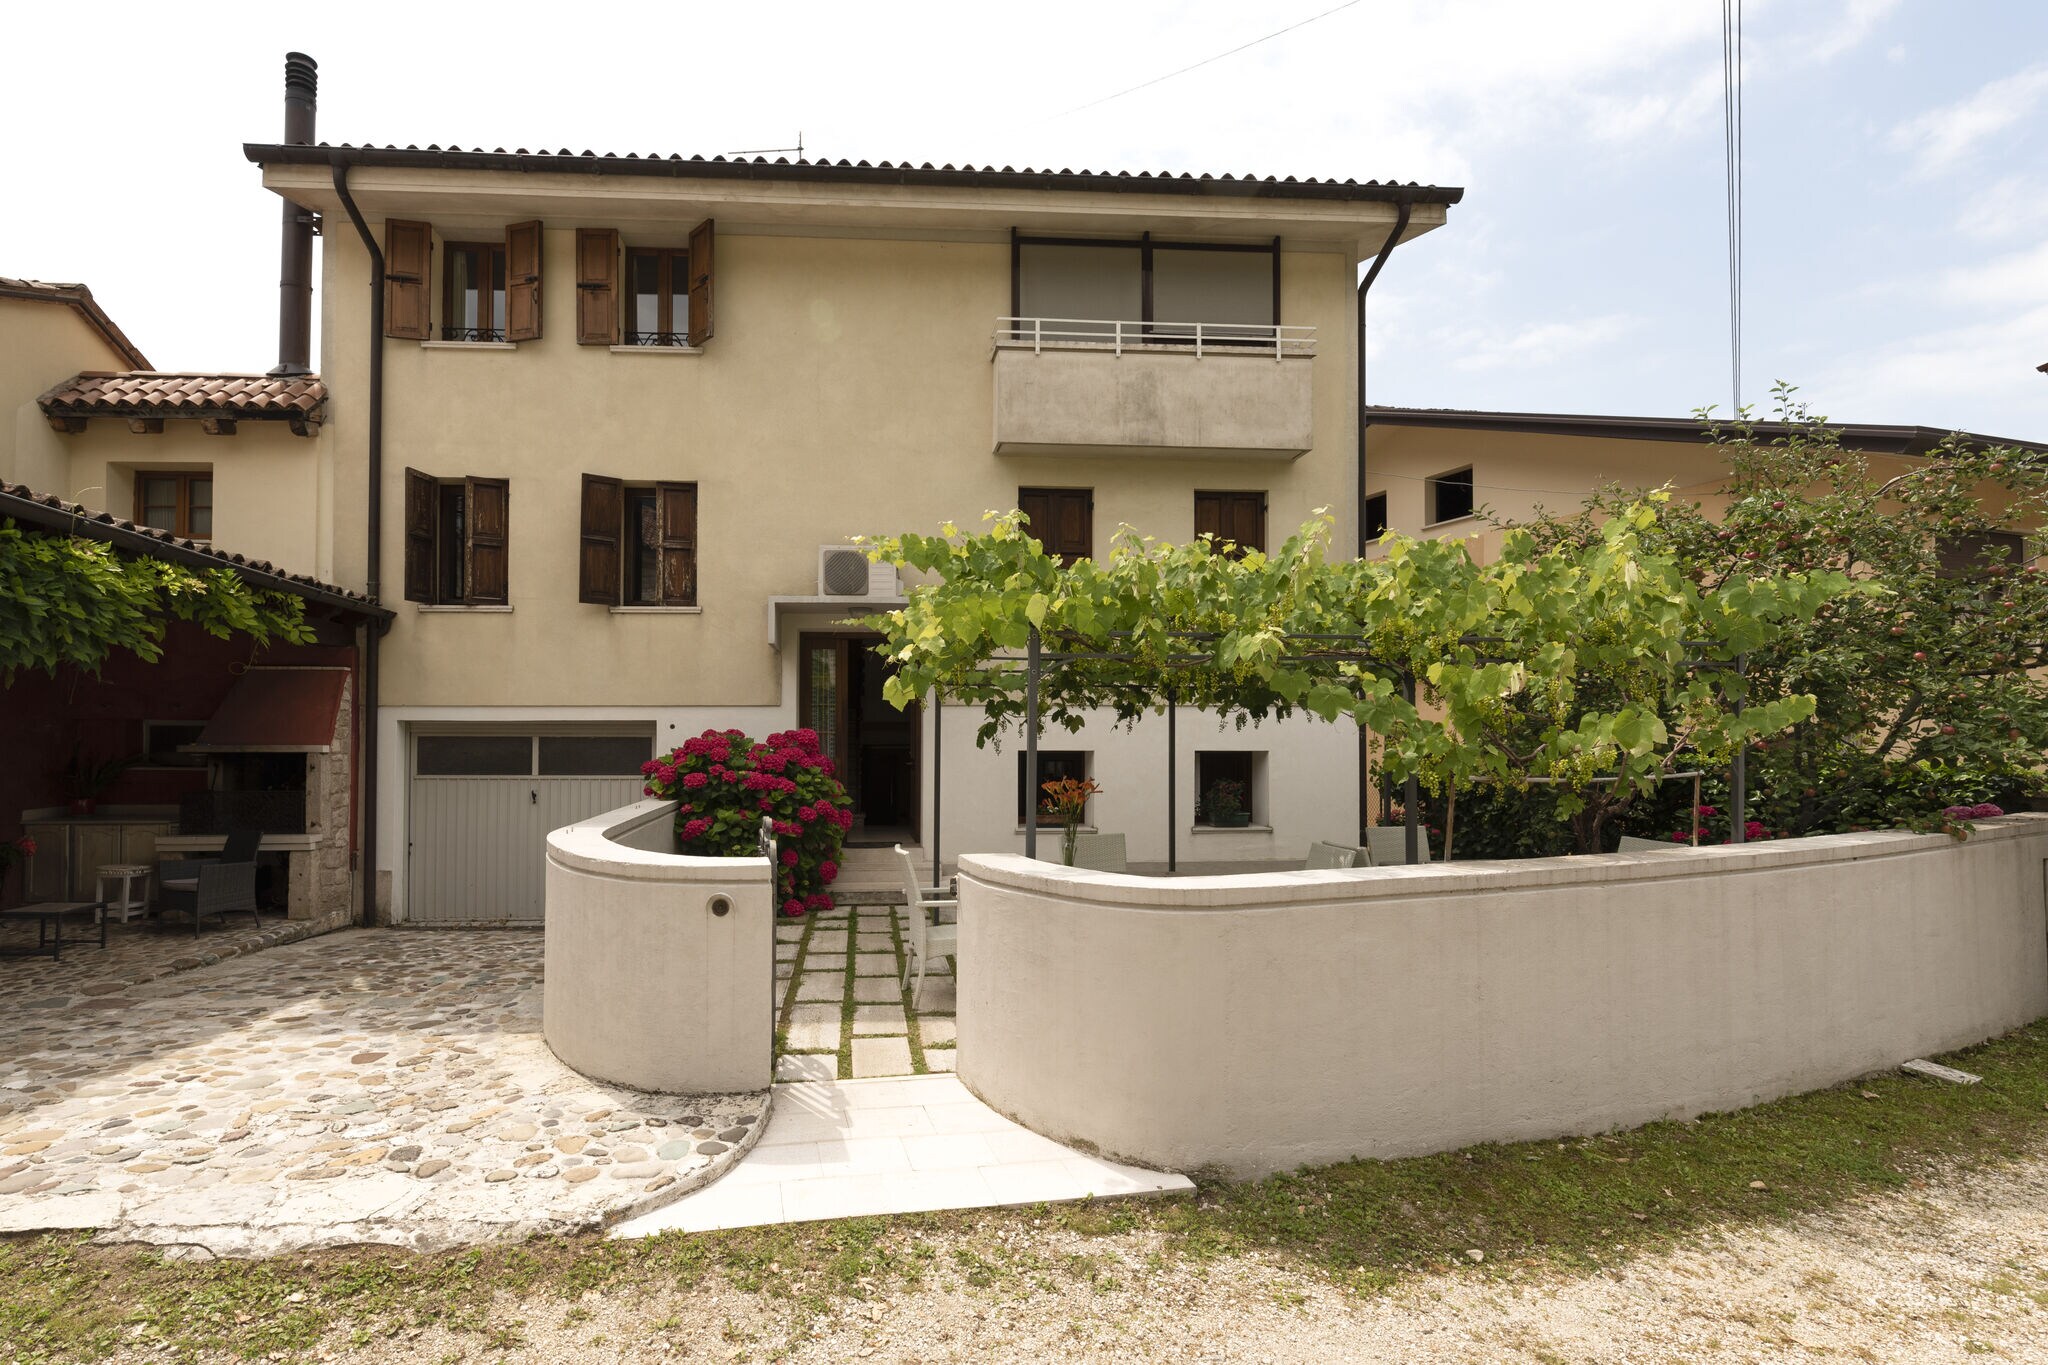 Mooi vakantiehuis in Veneto, in de provincie Treviso.